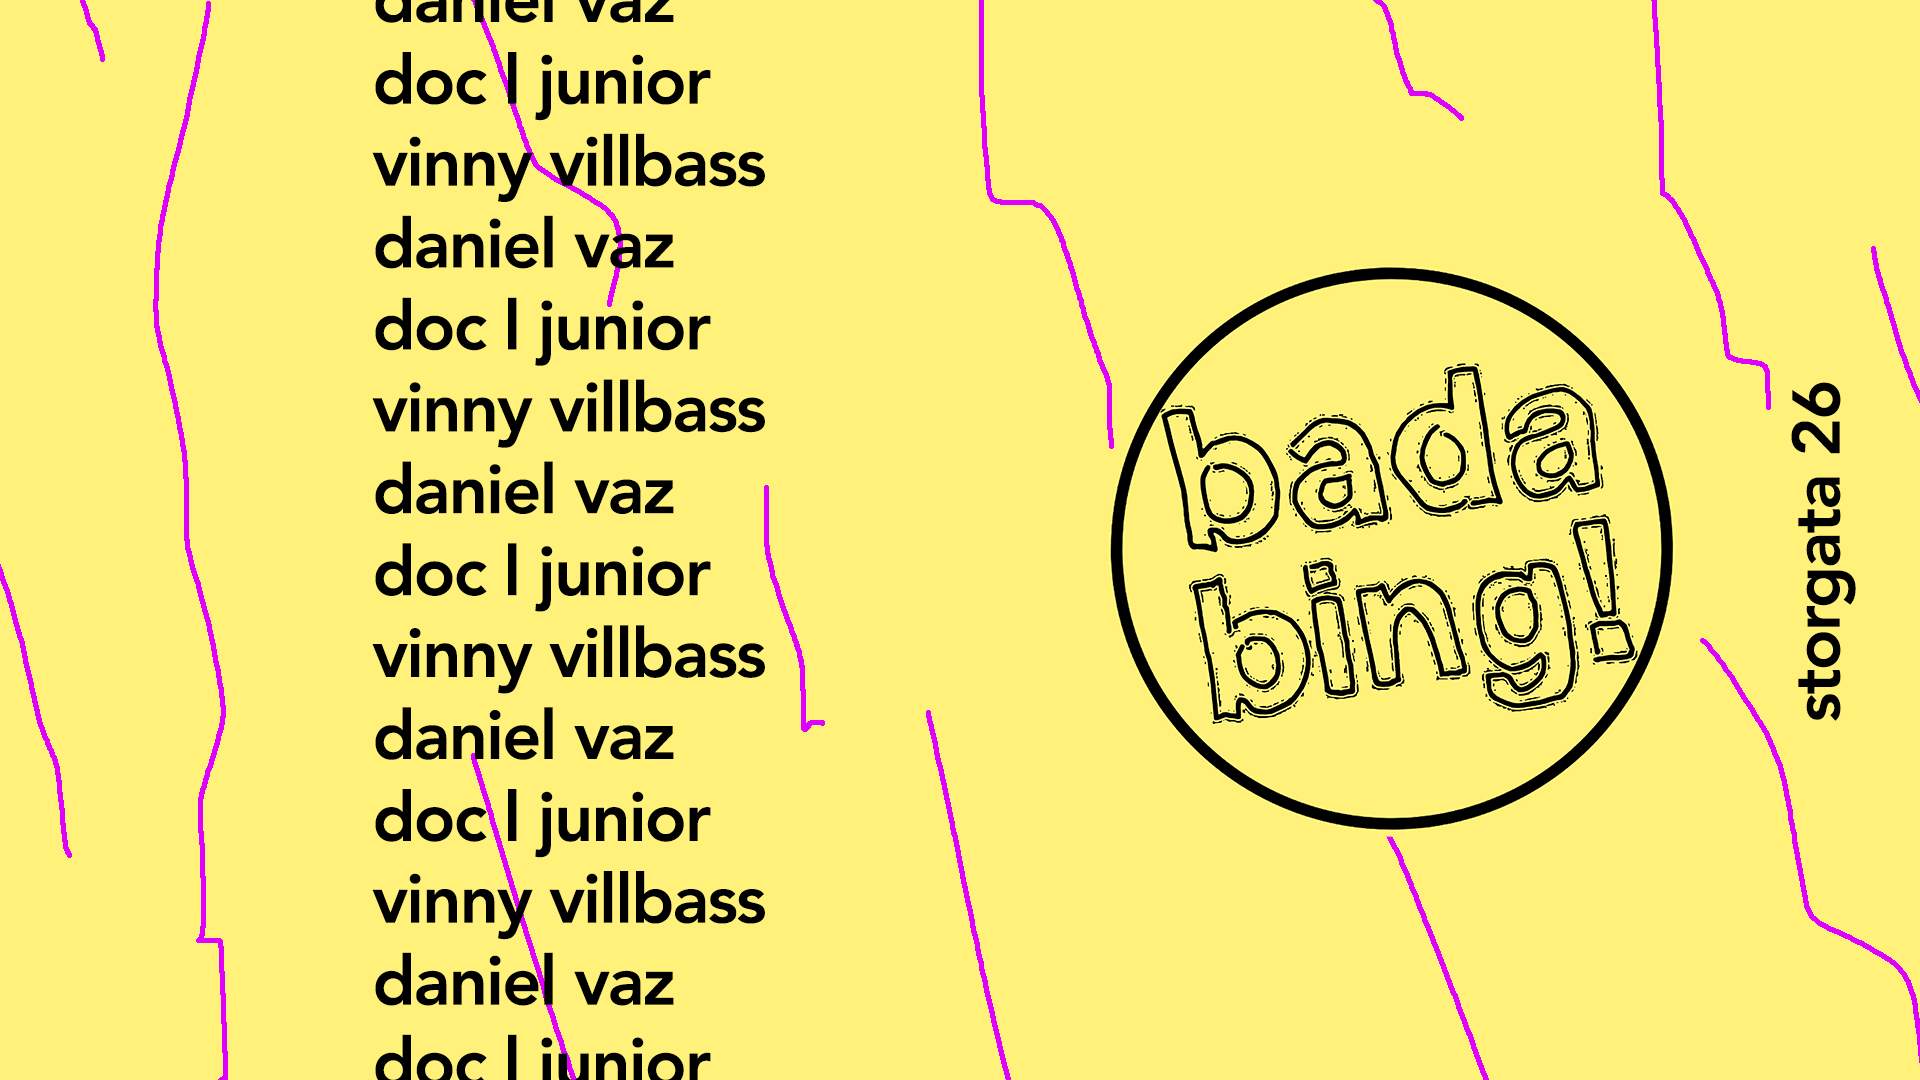 badabing: doc l junior + Vinny Villbass + daniel vaz - Página frontal